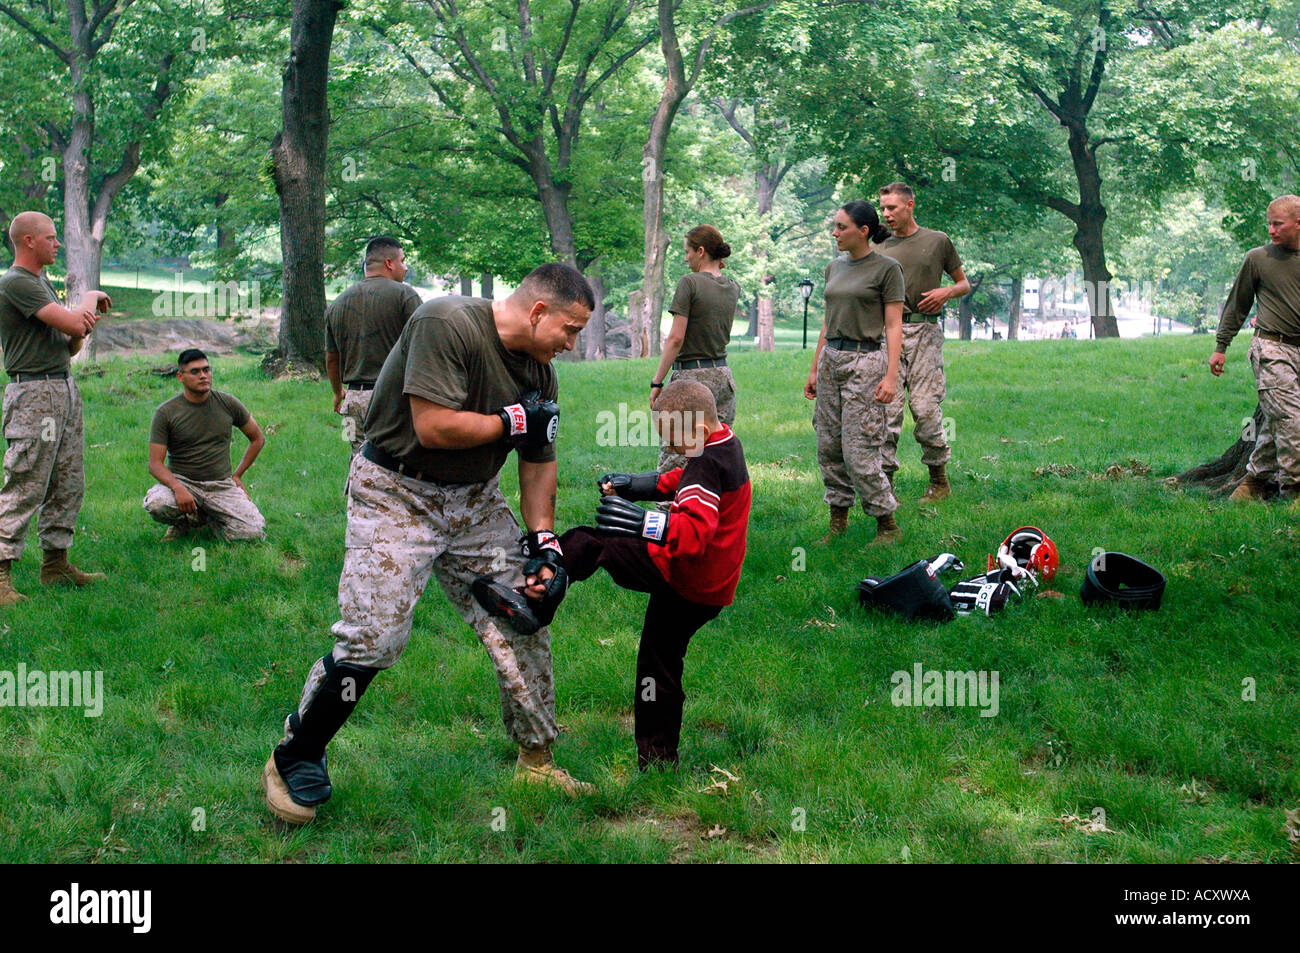 Marine Corps Día en Central Park Marines demostrar artes marciales Foto de stock